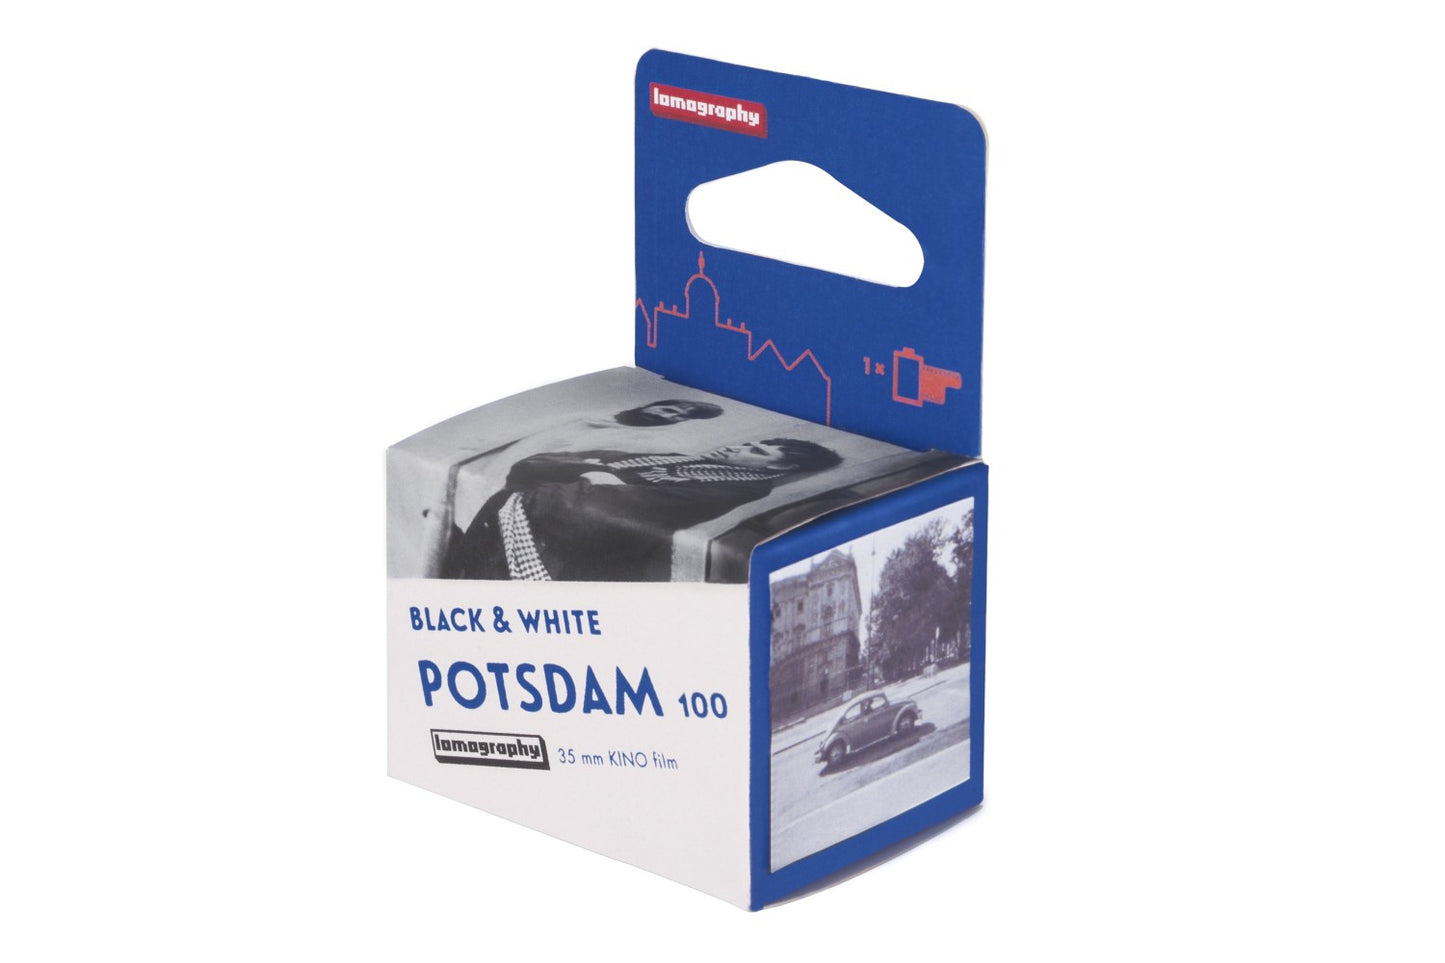 Potsdam Kino B&W 35mm ISO 100